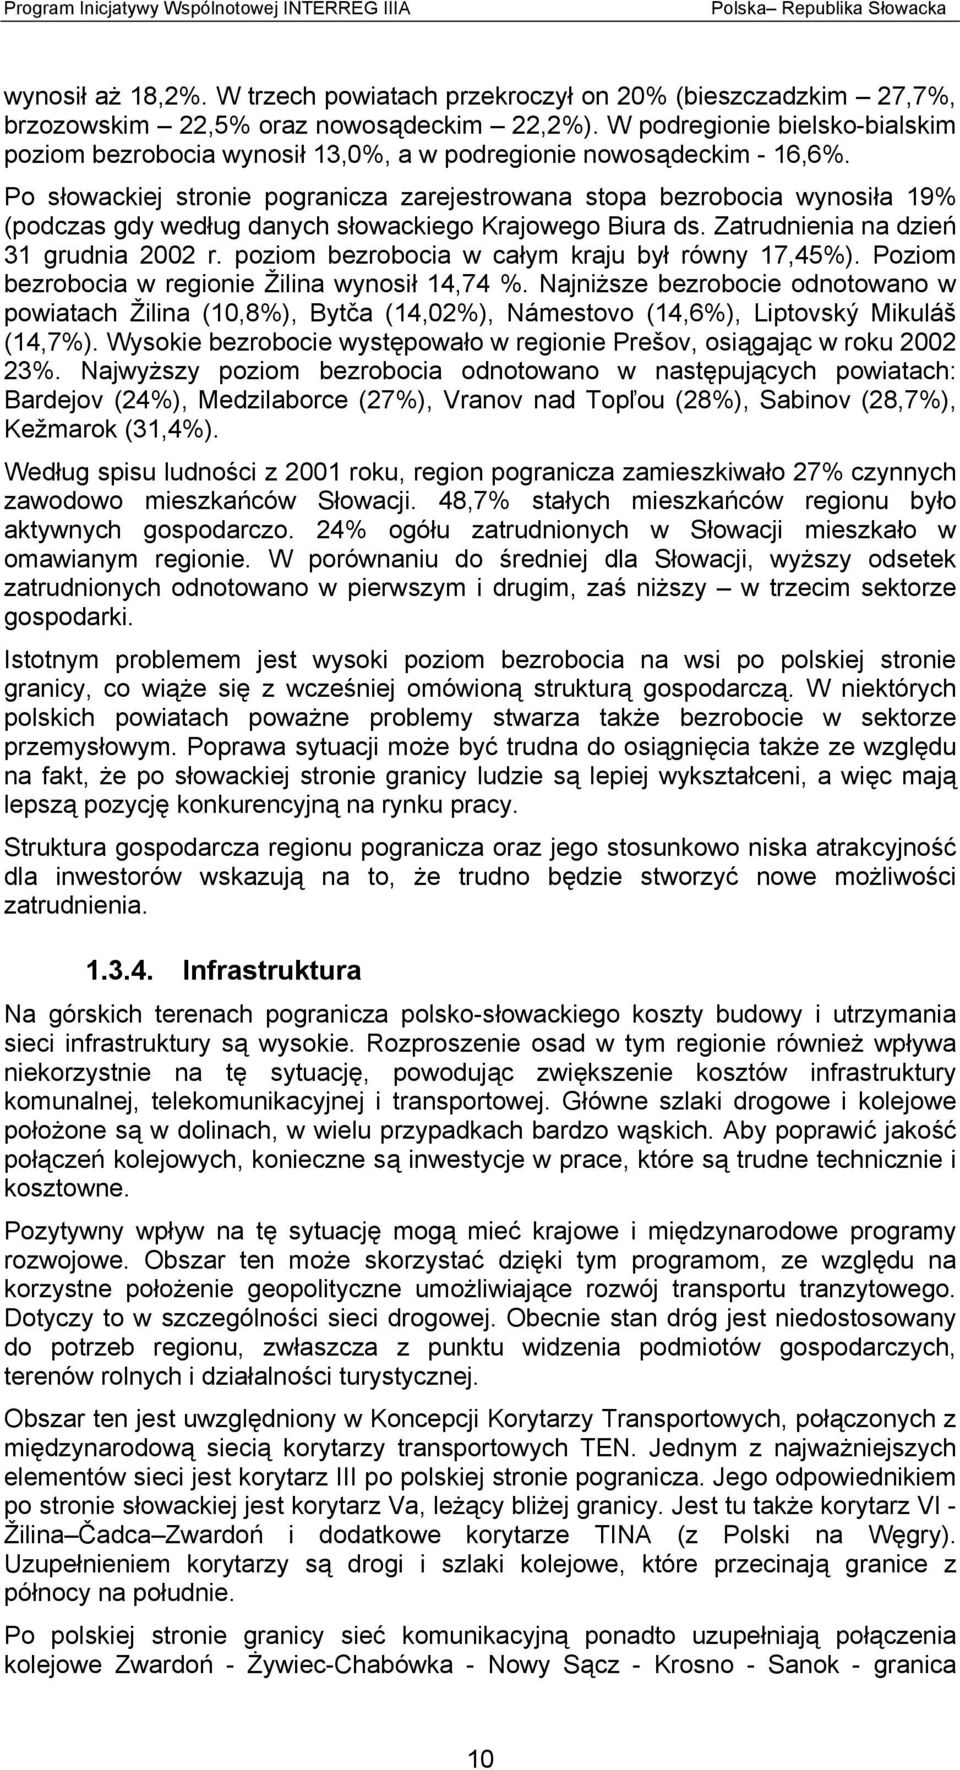 Po słowackiej stronie pogranicza zarejestrowana stopa bezrobocia wynosiła 19% (podczas gdy według danych słowackiego Krajowego Biura ds. Zatrudnienia na dzień 31 grudnia 2002 r.